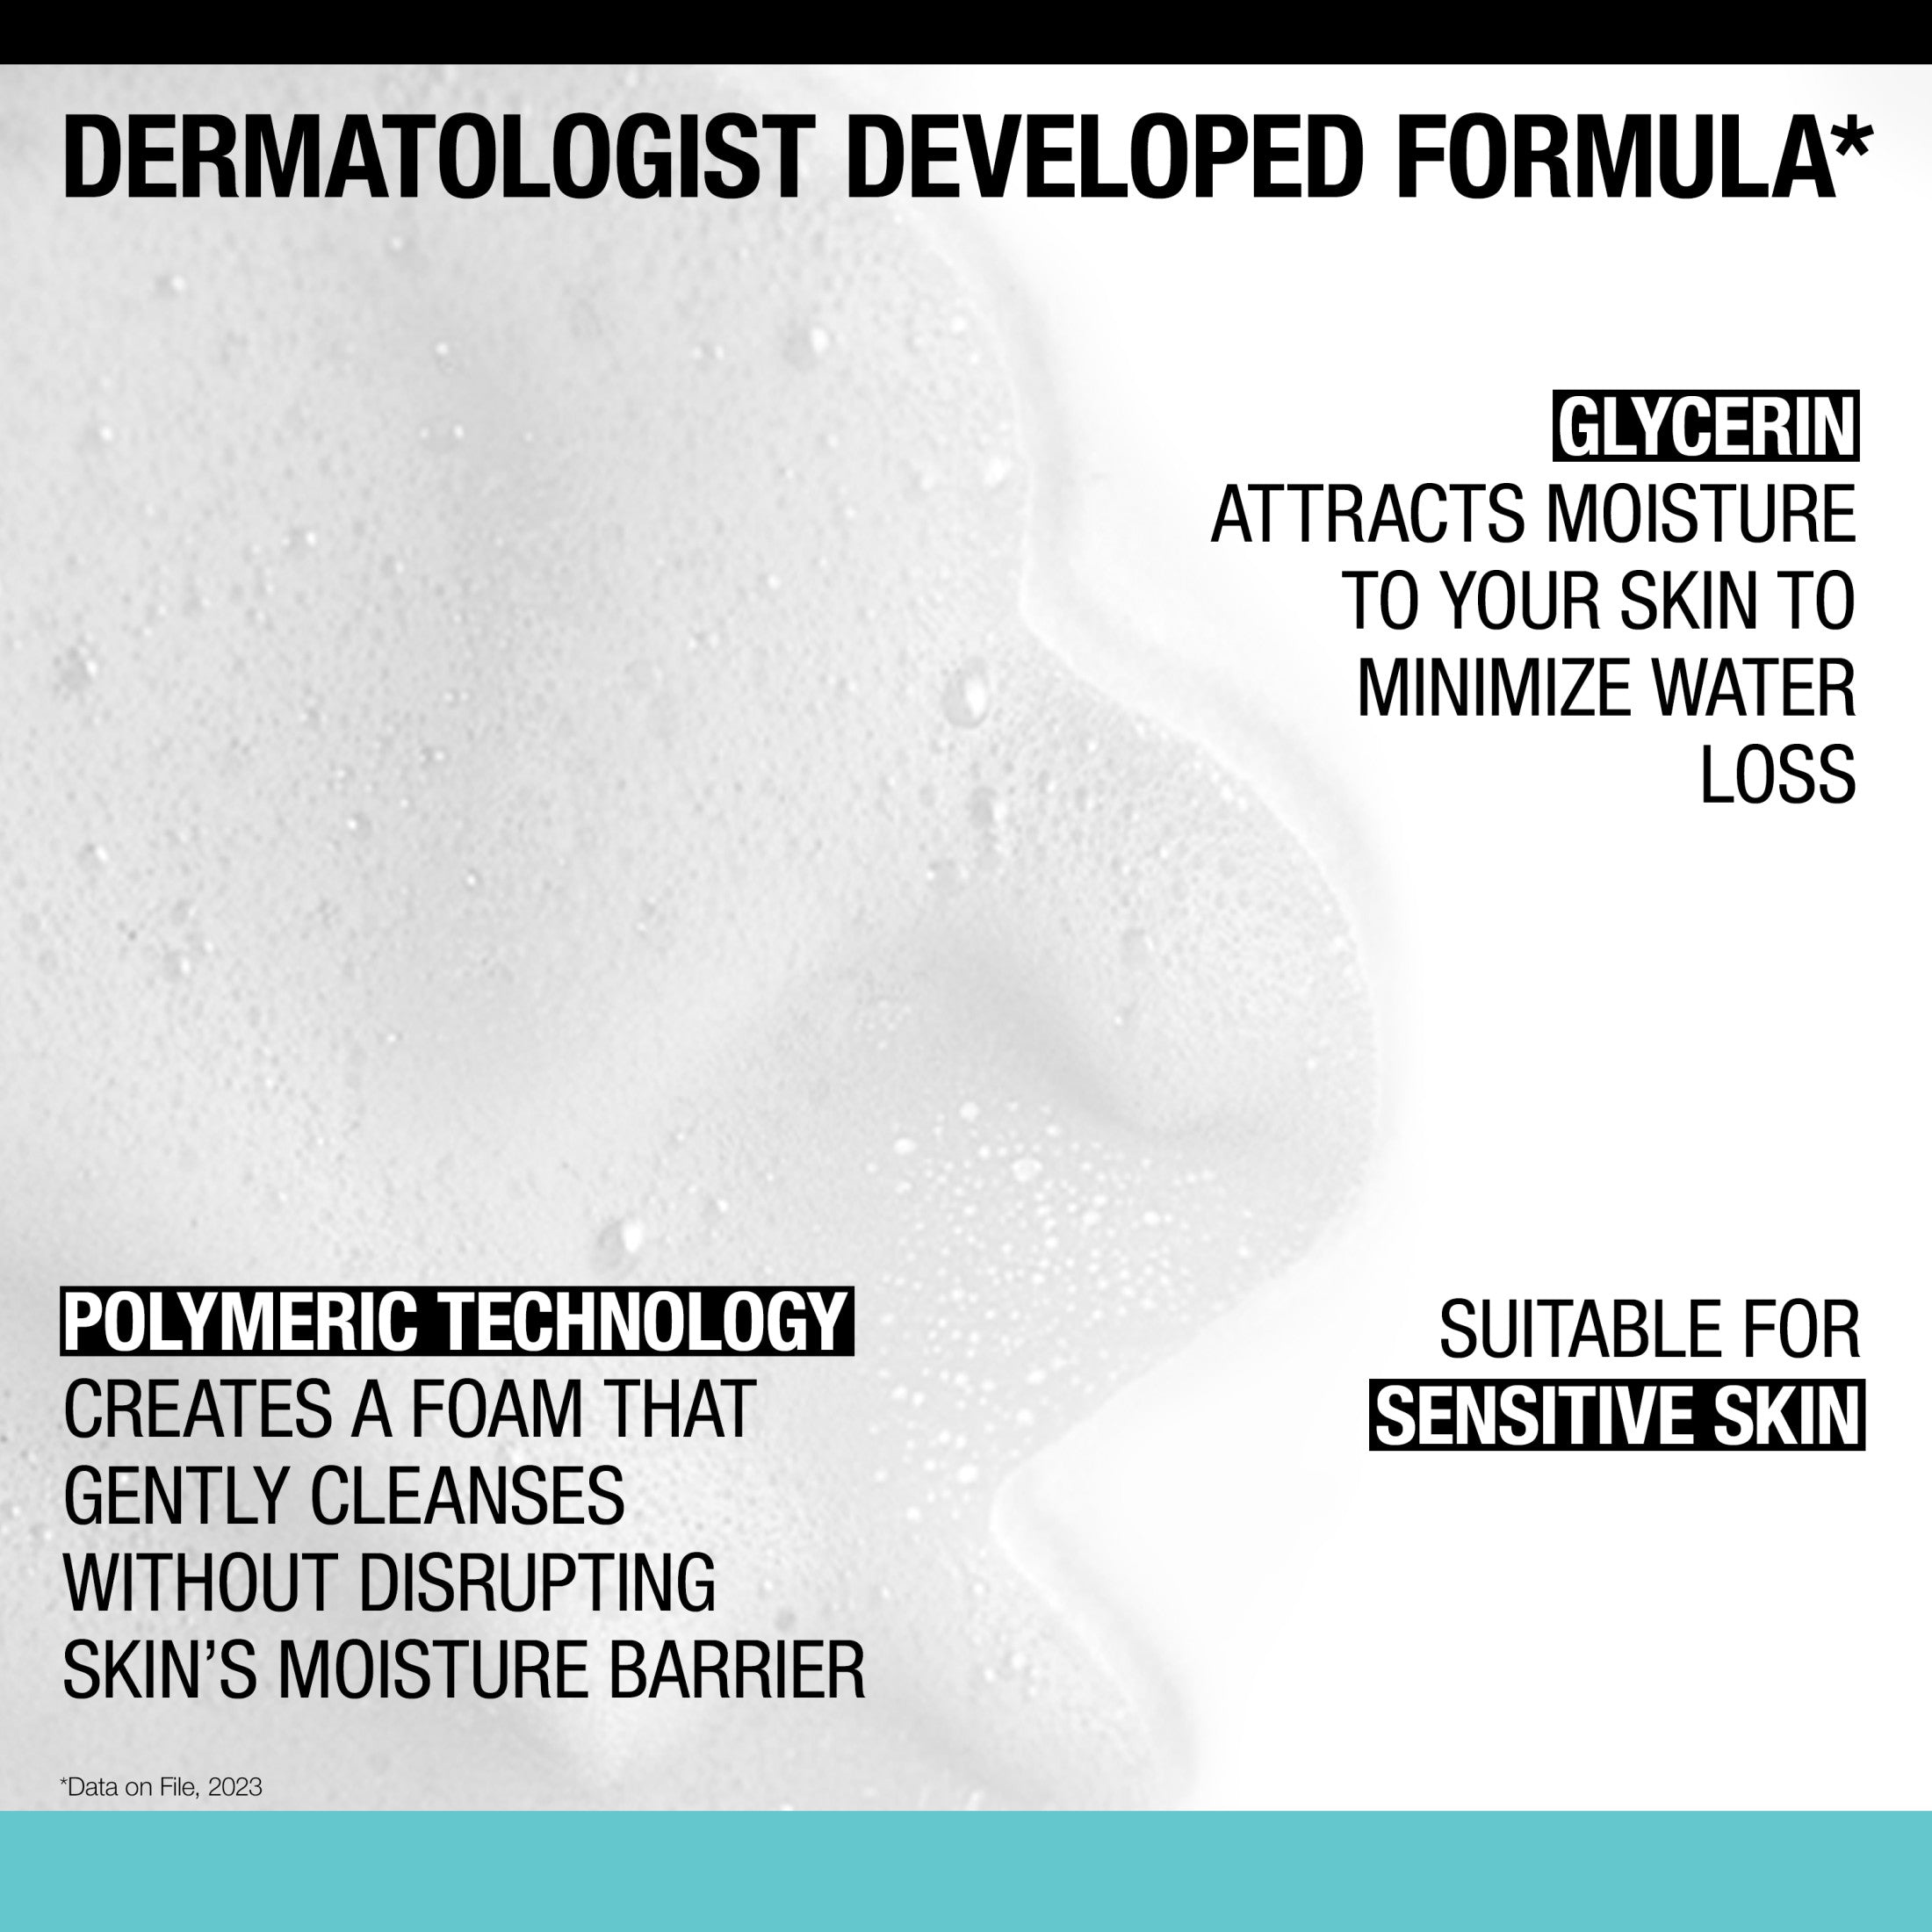 Neutrogena Fragrance Free Ultra Gentle Foaming Face Wash, 12 fl. oz | MTTS274